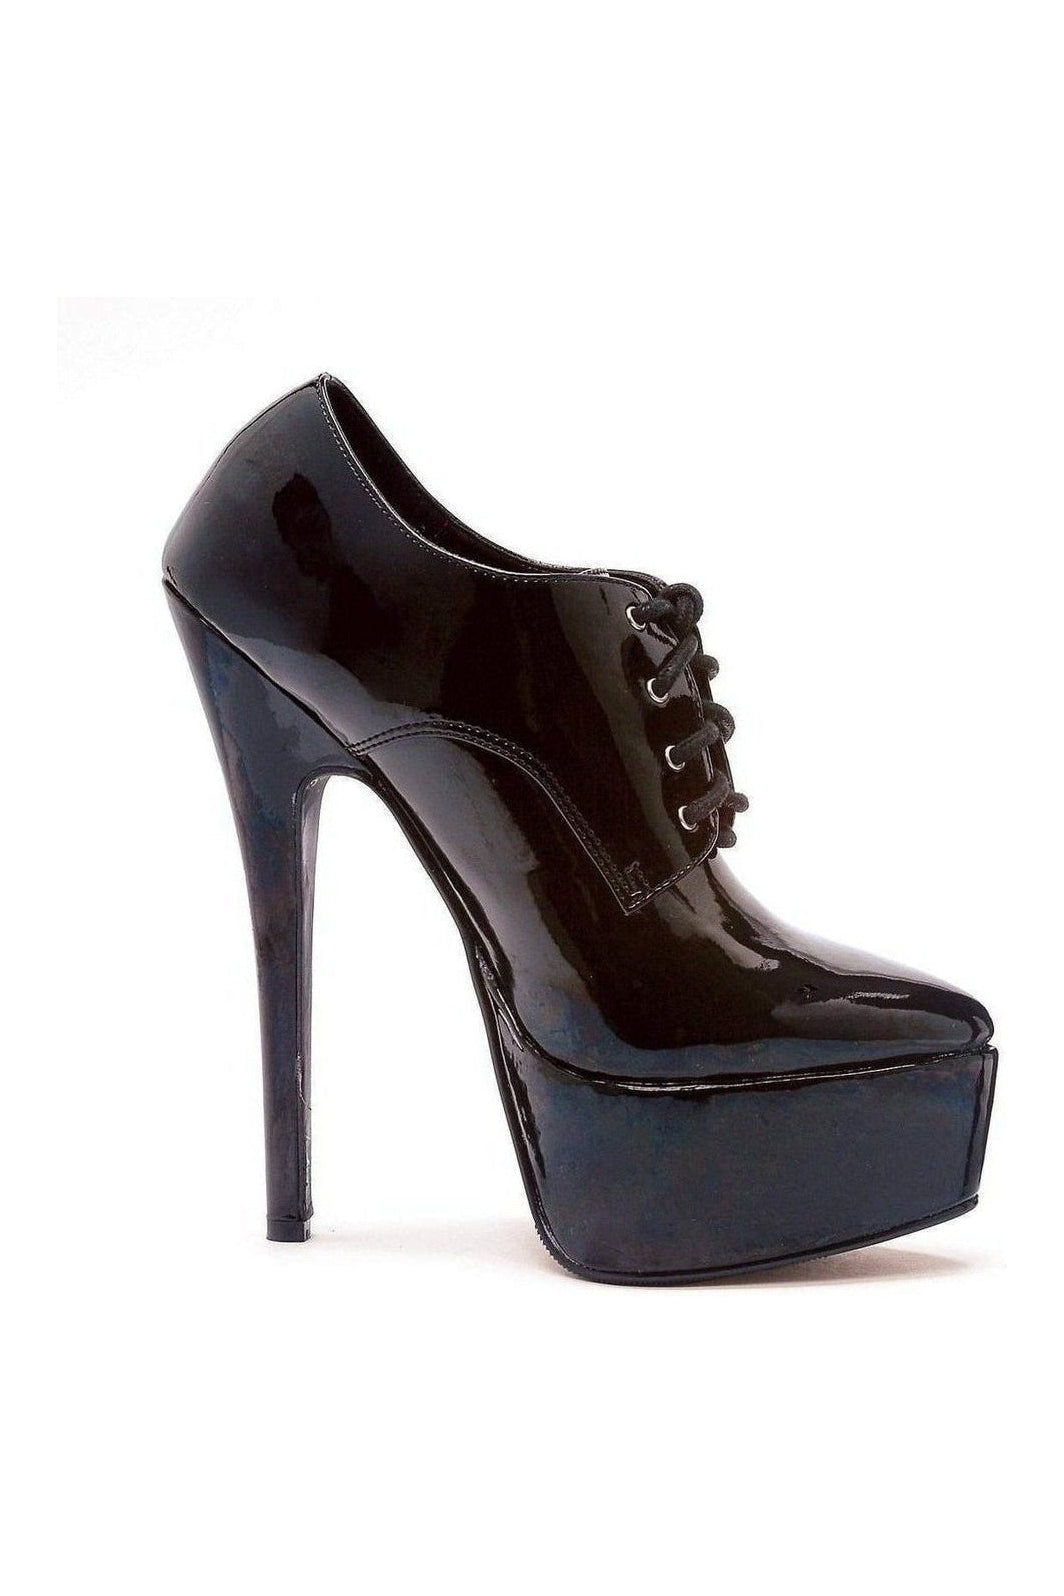 Ellie Shoes Black Pumps Platform Stripper Shoes | Buy at Sexyshoes.com